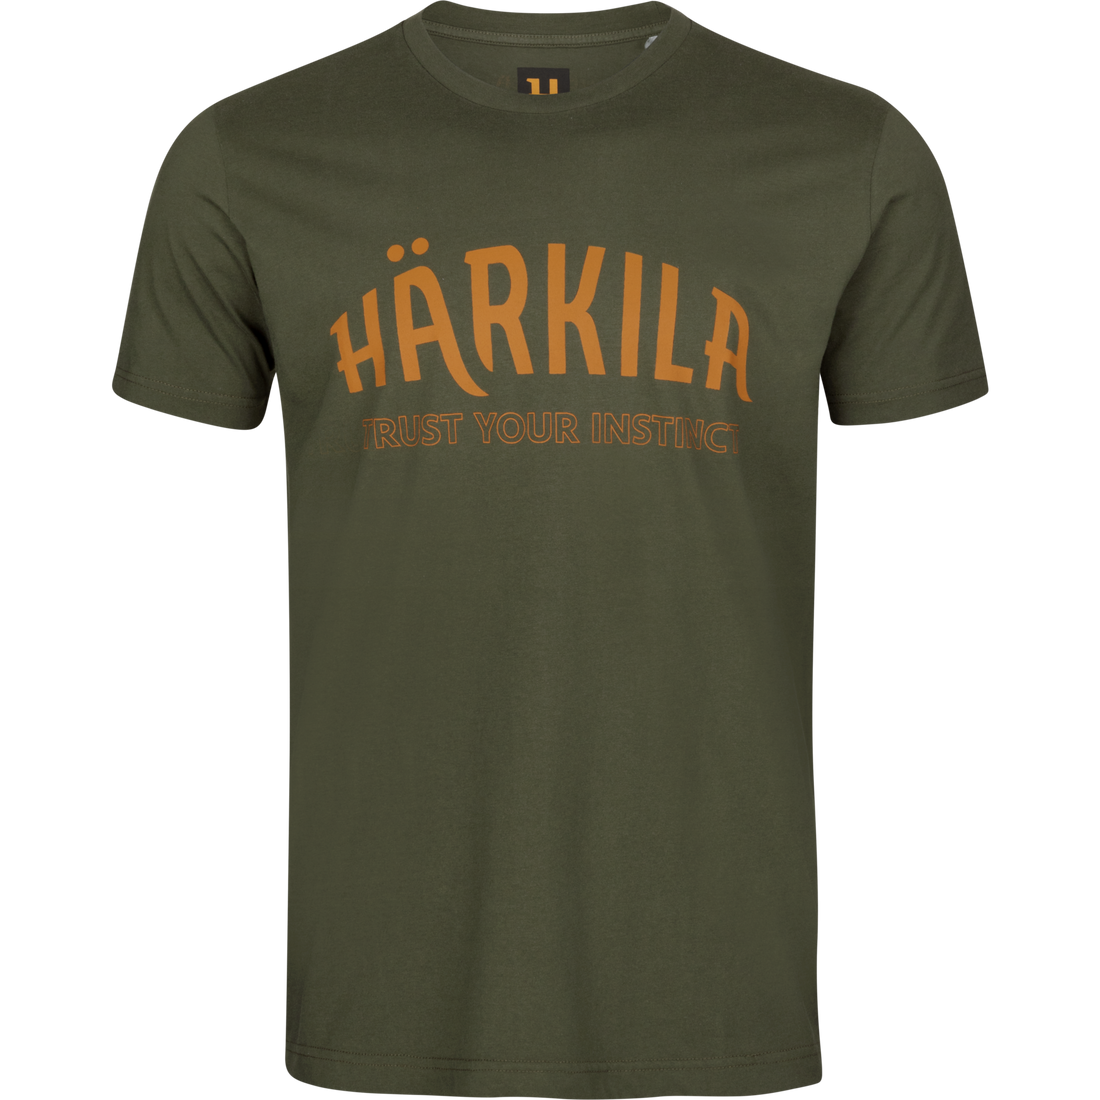 Harkila Modi S/S t-shirt Rosin